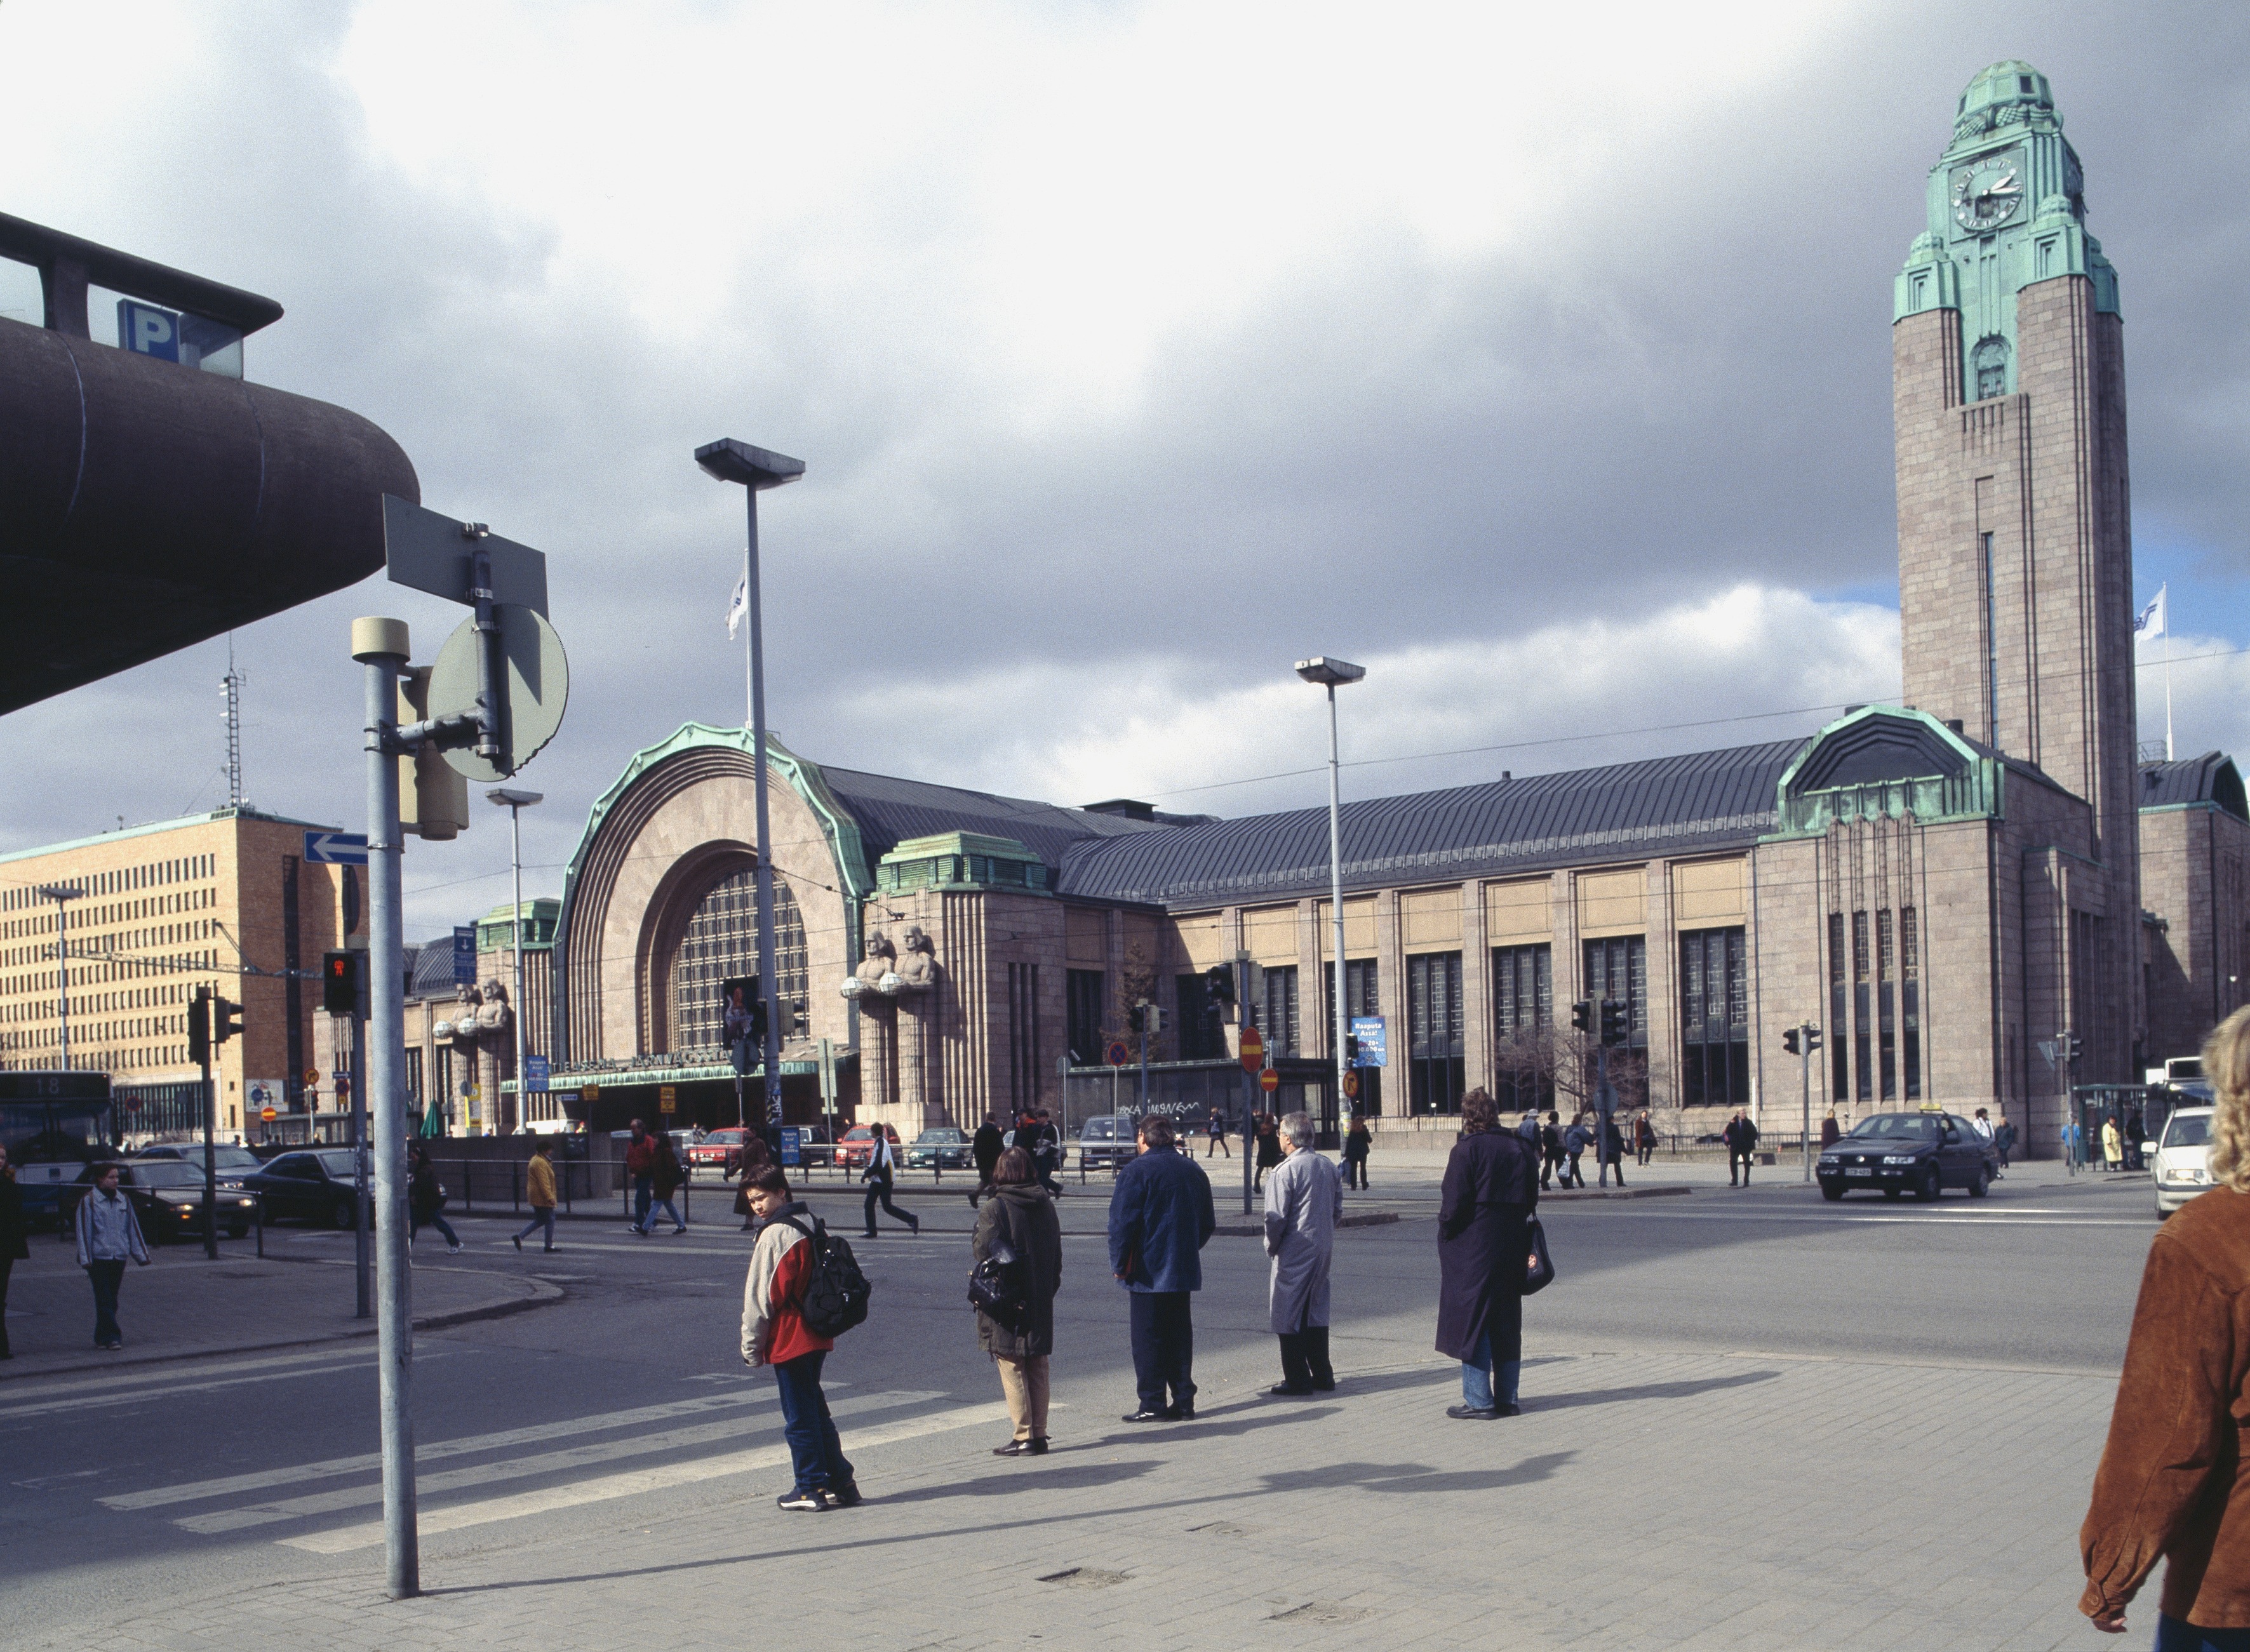 Helsingin rautatieasema Kaivokadun puolelta nähtynä.